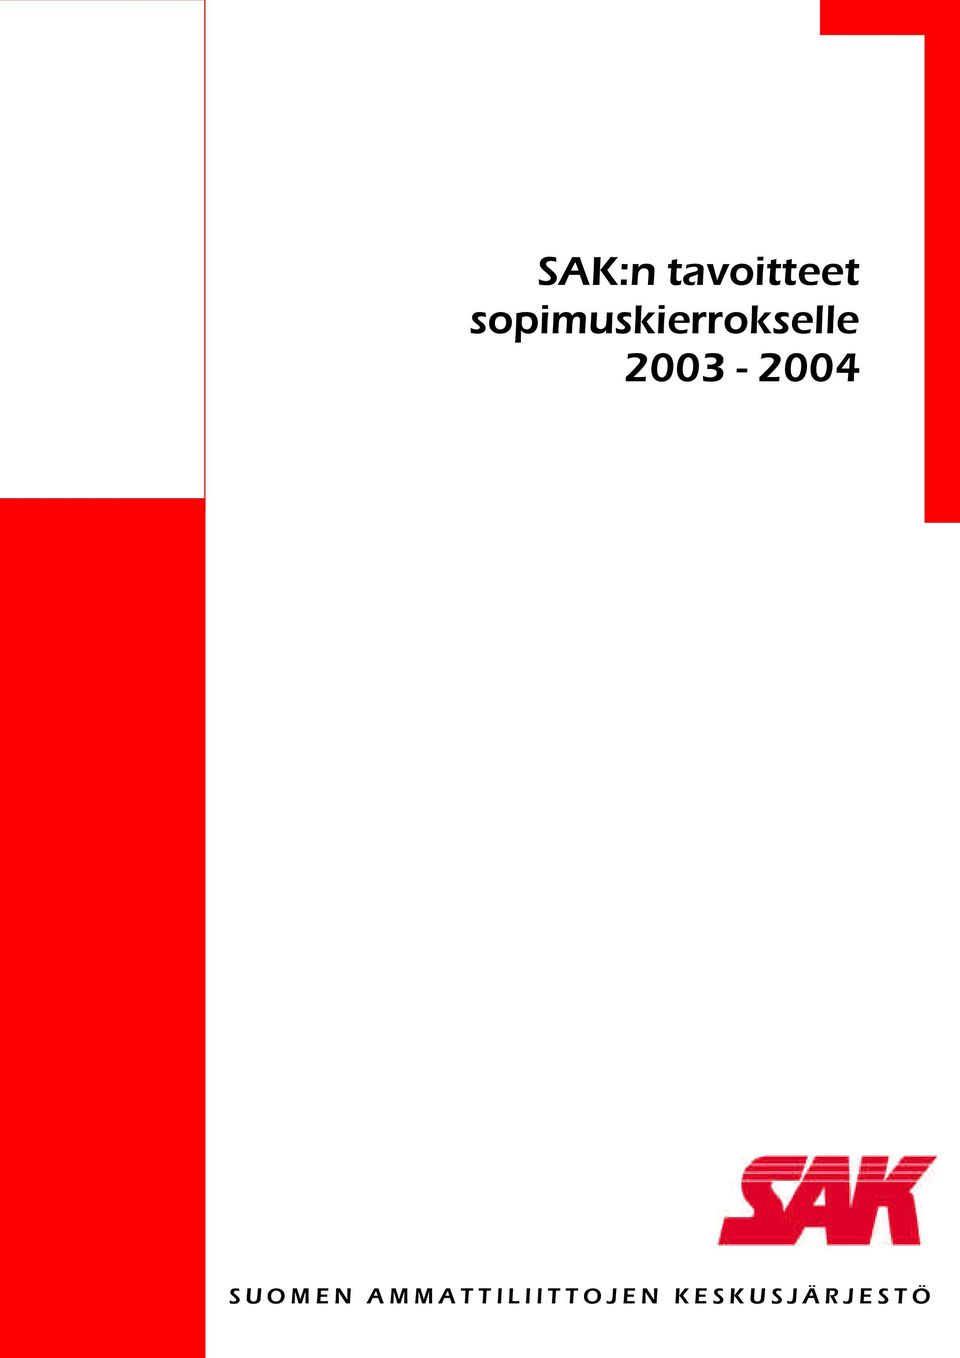 2003-2004 SUOMEN